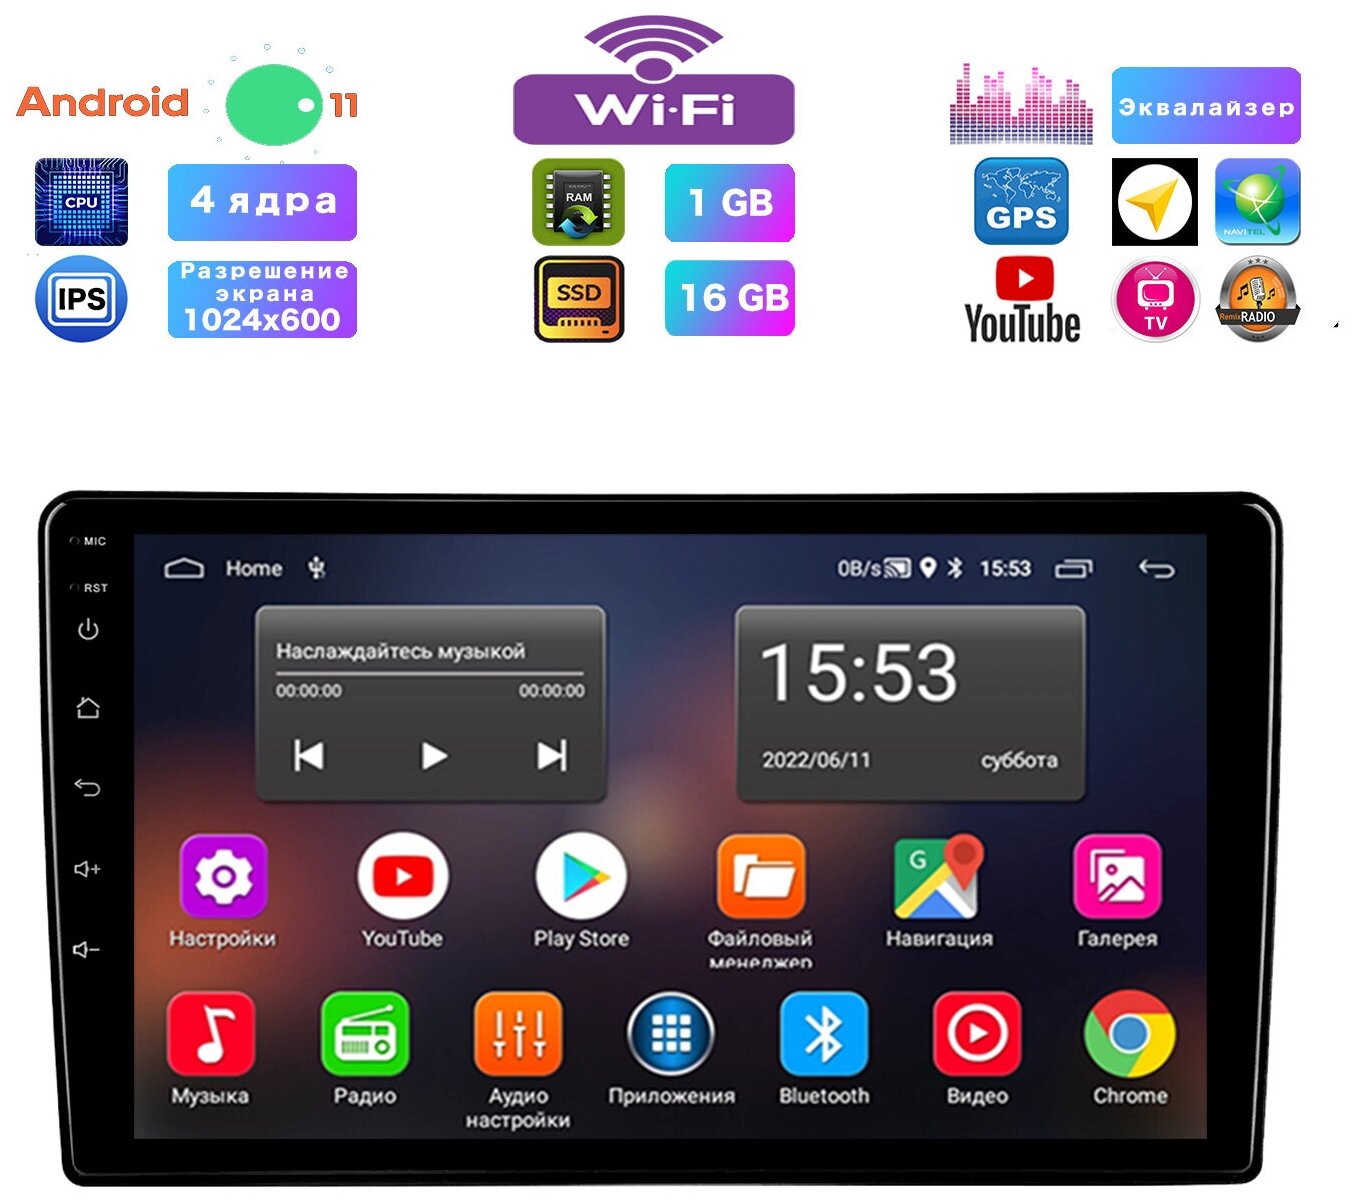 Автомагнитола для Ford Универсальная, Android 10, 1/16 Gb, Wi-Fi, Bluetooth, Hands Free, разделение экрана, поддержка кнопок на руле